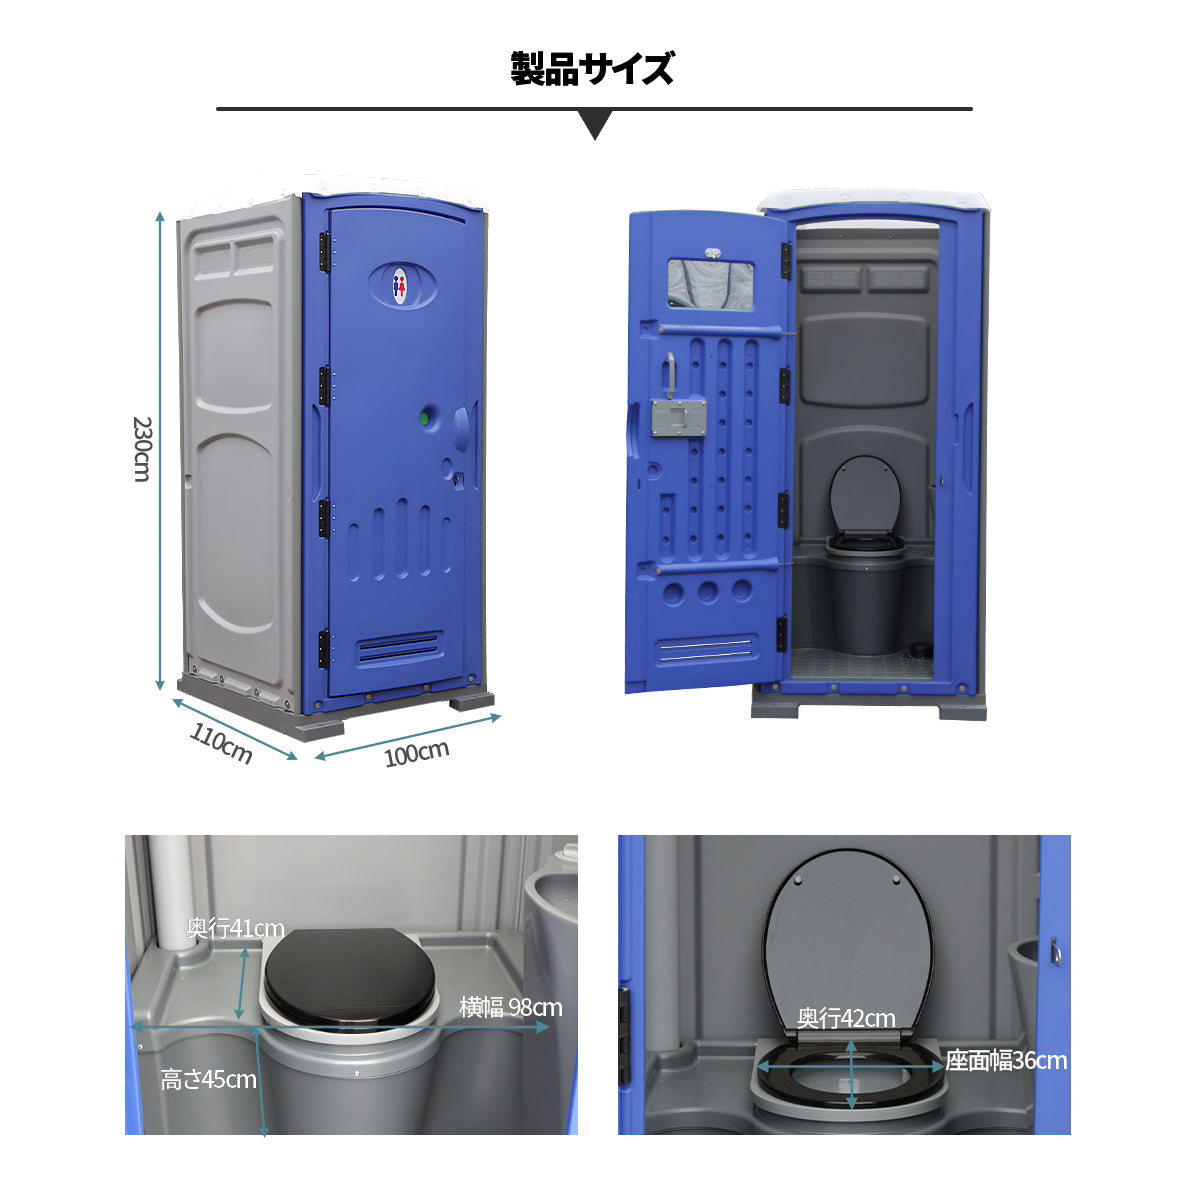 仮設トイレ フットポンプ式 洋式便座 汲み取り 簡易水栓 両用